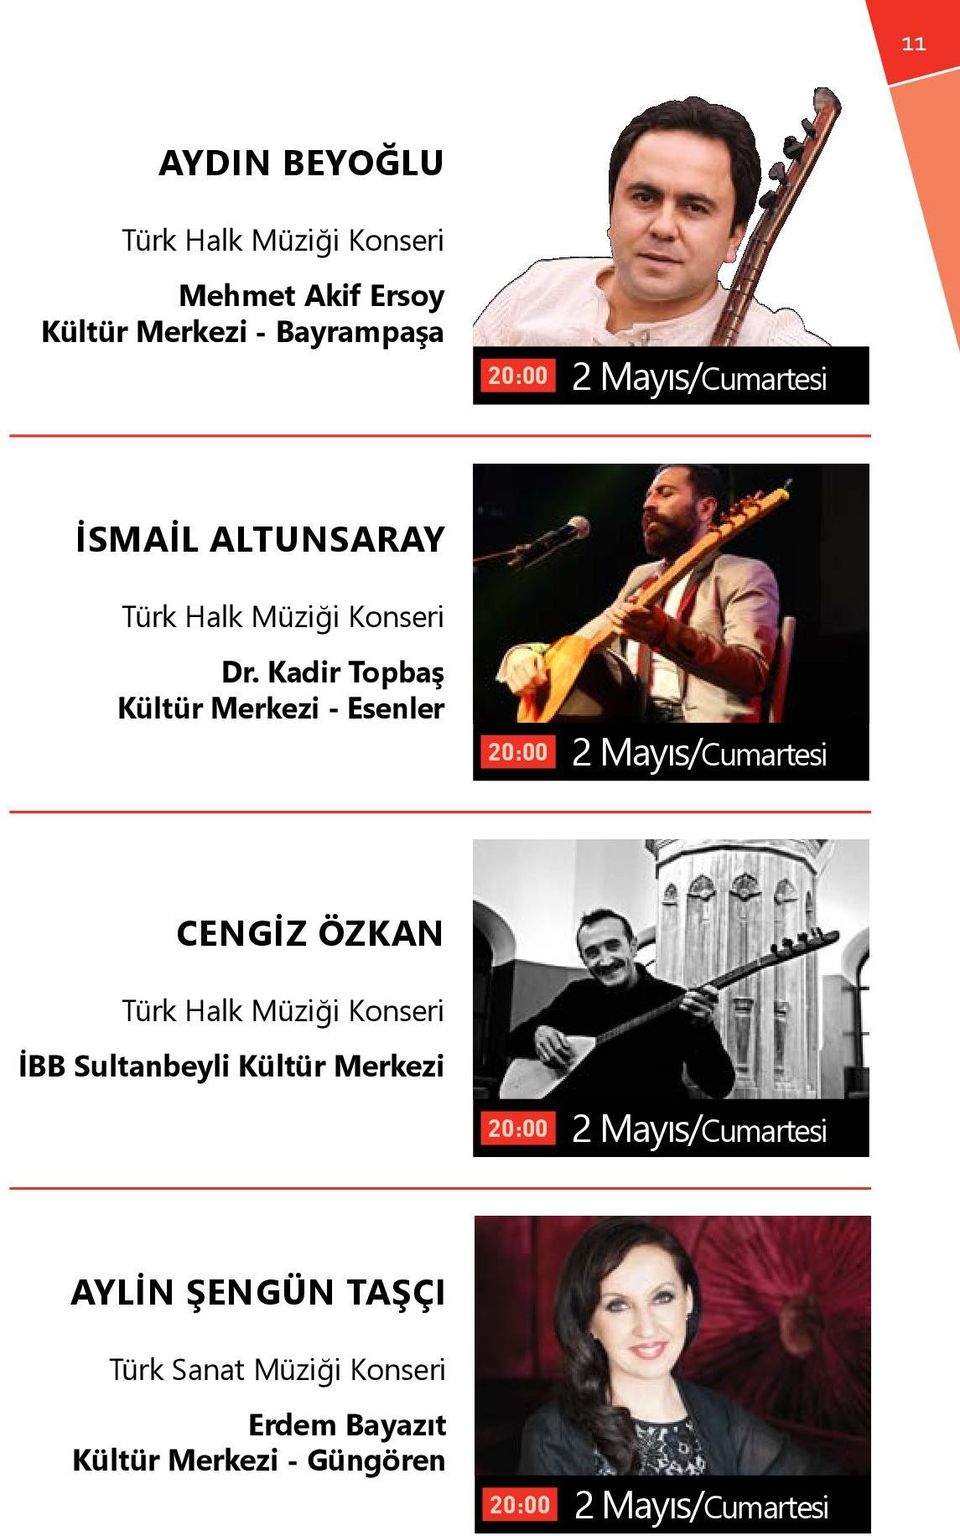 Kadir Topbaş Kültür Merkezi - Esenler 2 Mayıs/Cumartesi CENGİZ ÖZKAN İBB